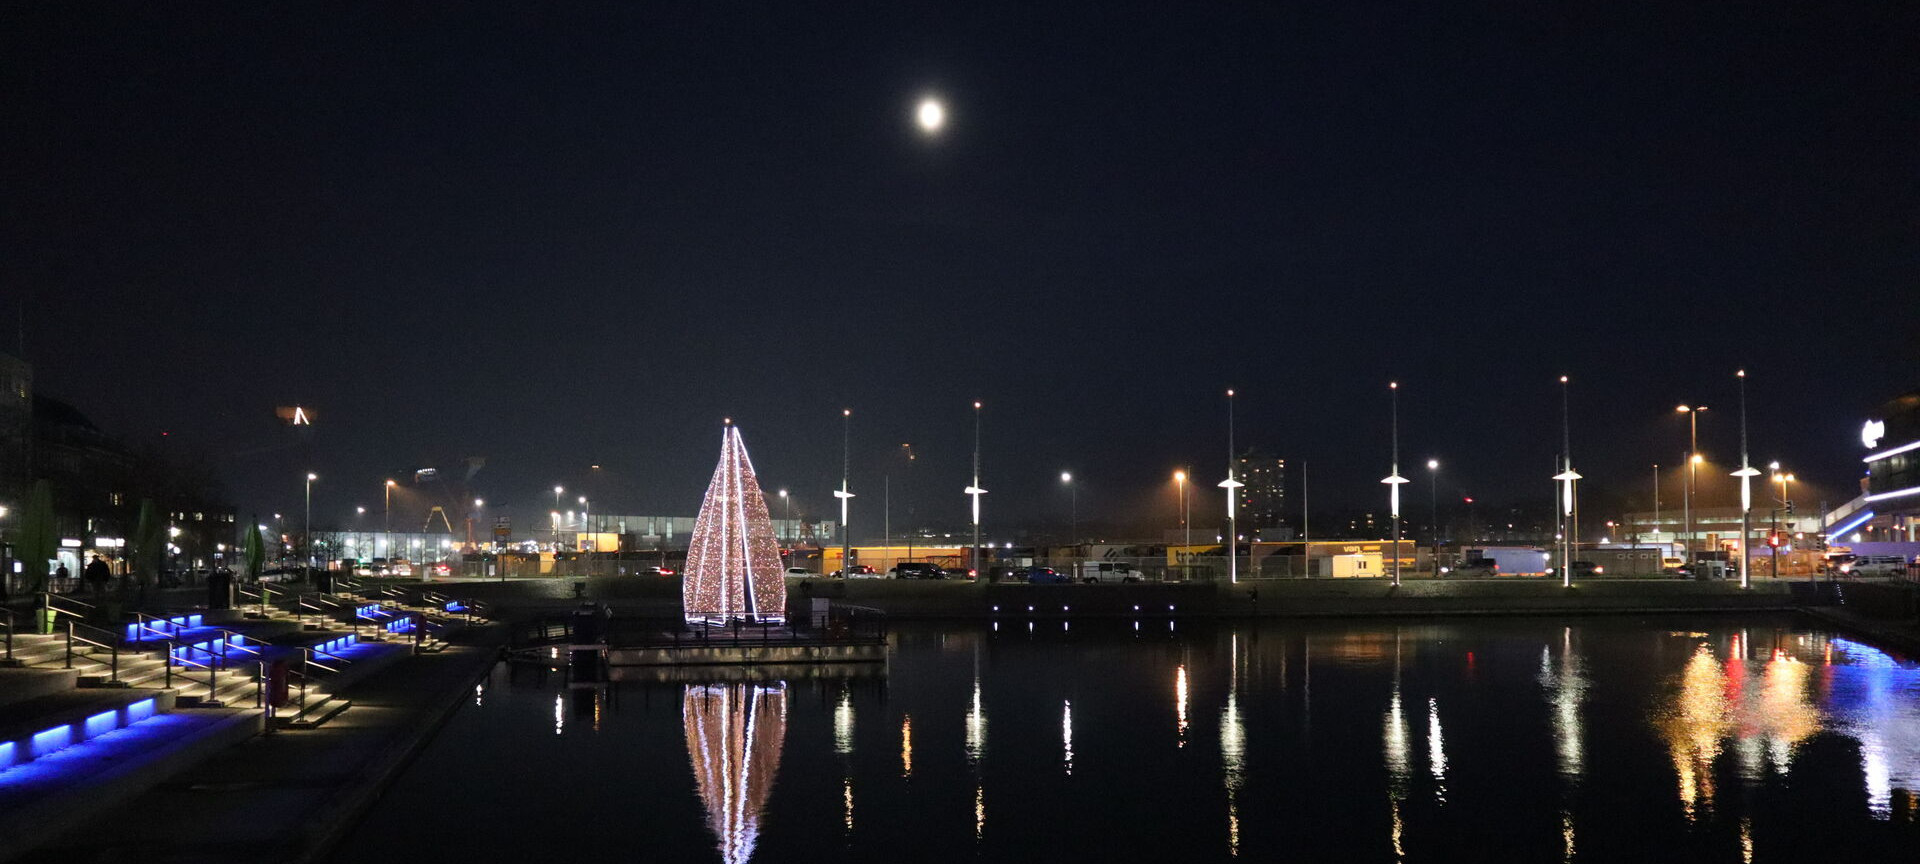 Bootshafen Lichtsegelbaum im Winter